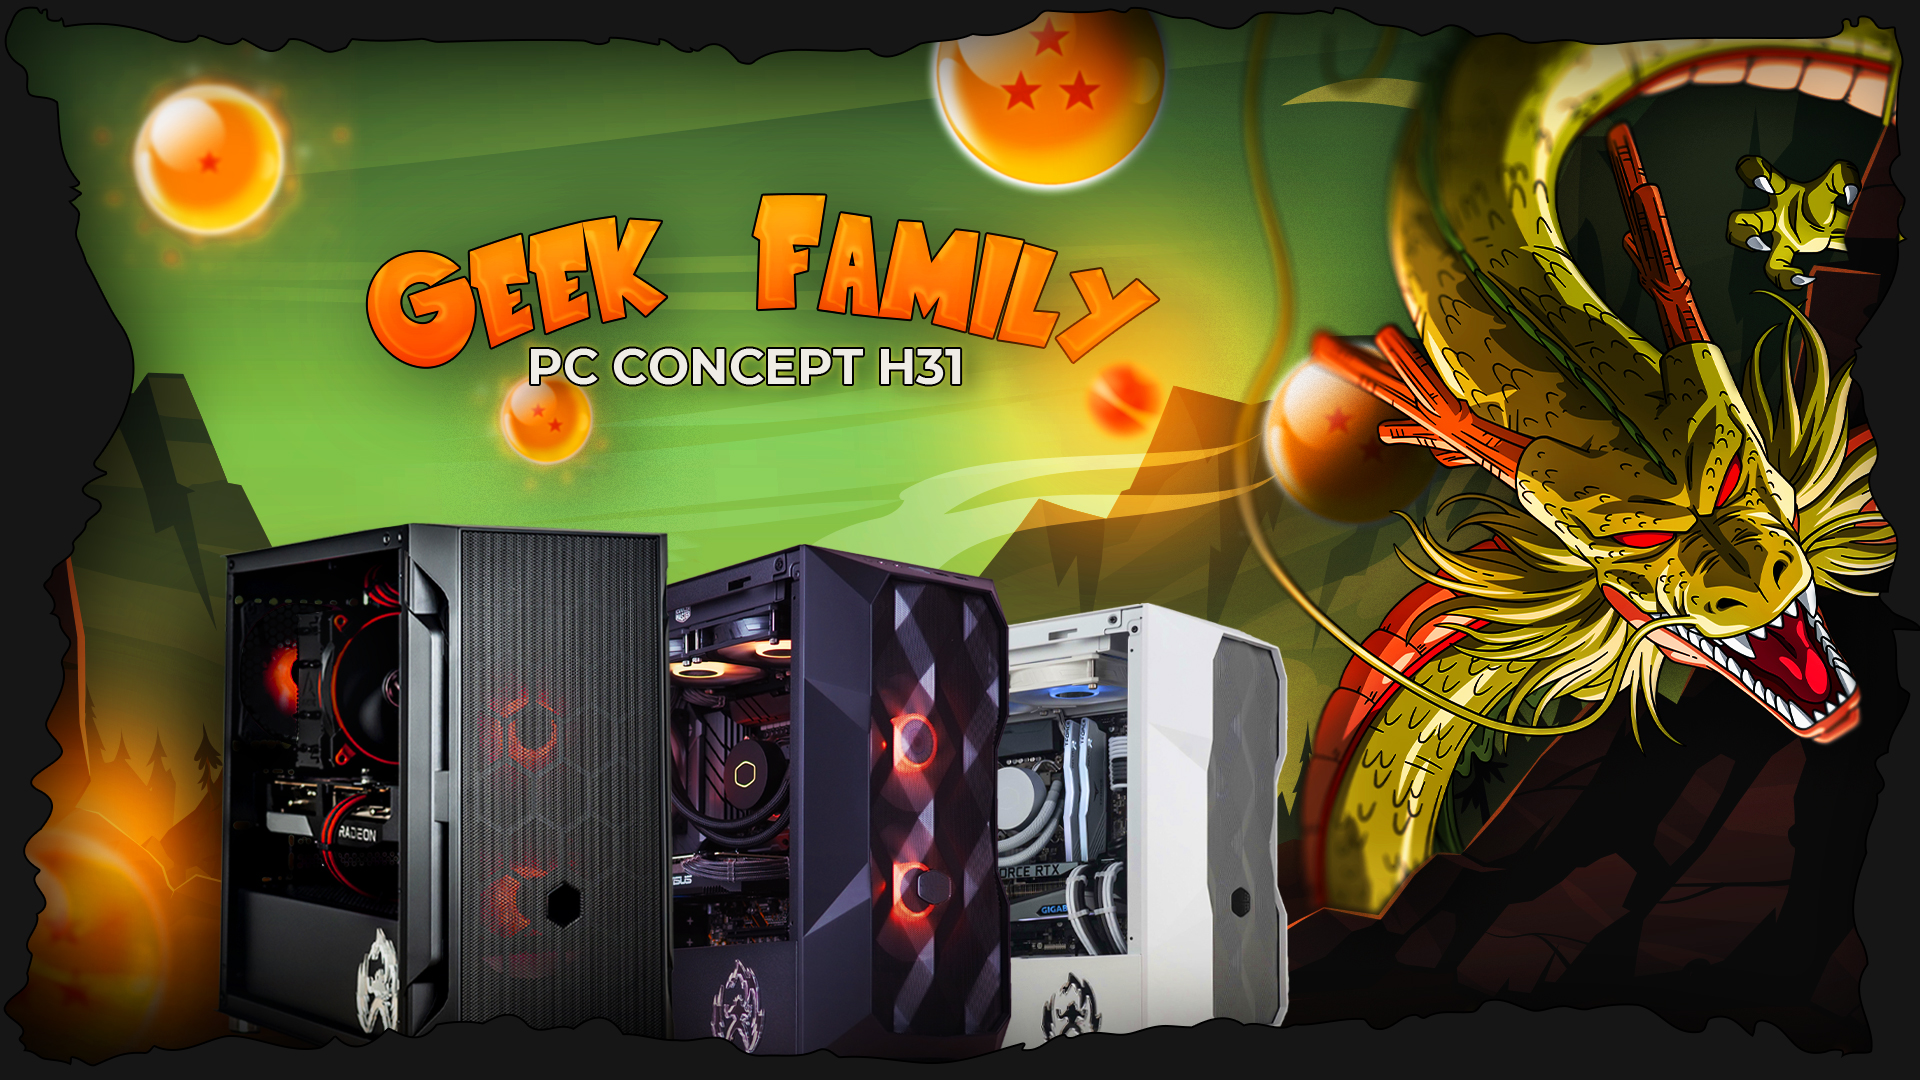 Visuel de la Gamme de PC GEEK Family des PC Concept H31 par Hardware31